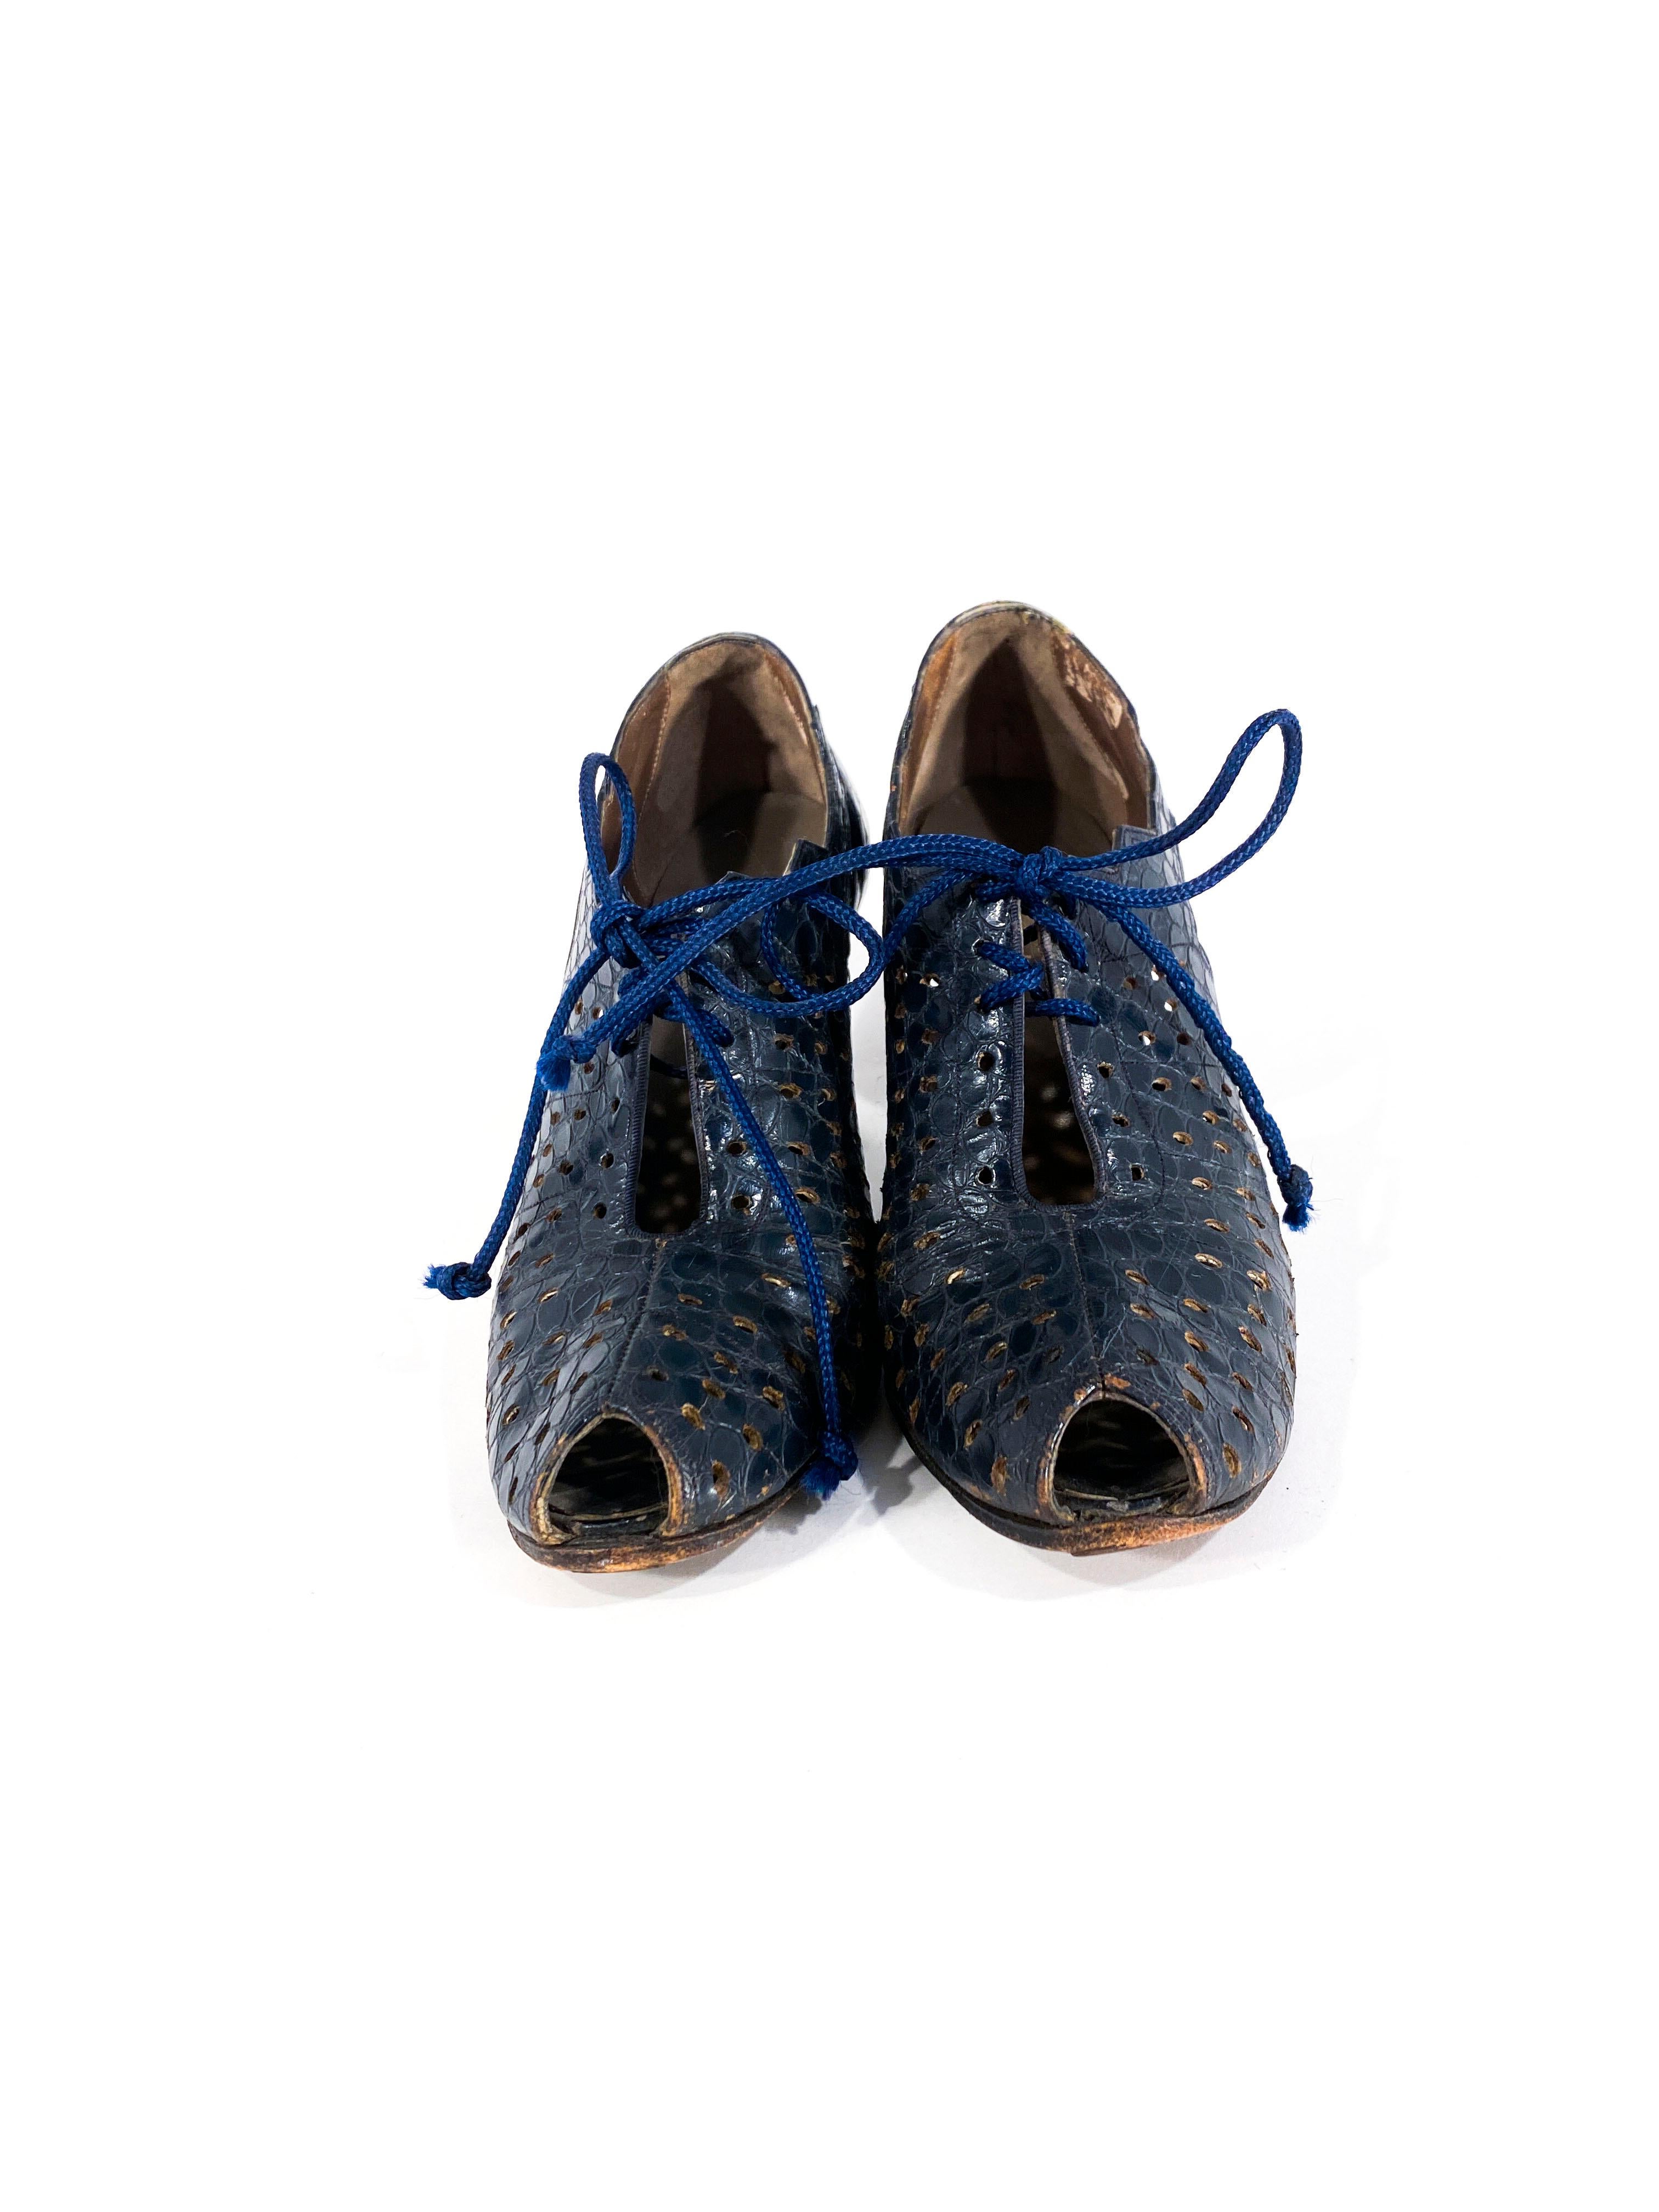 chaussures à talon Art Déco des années 30 en alligator bleu marine avec de grandes découpes sur les côtés de la chaussure. Le corps des chaussures est orné de trous de perçage et d'un lacet. Les talons ont une hauteur de 10 cm et sont recouverts